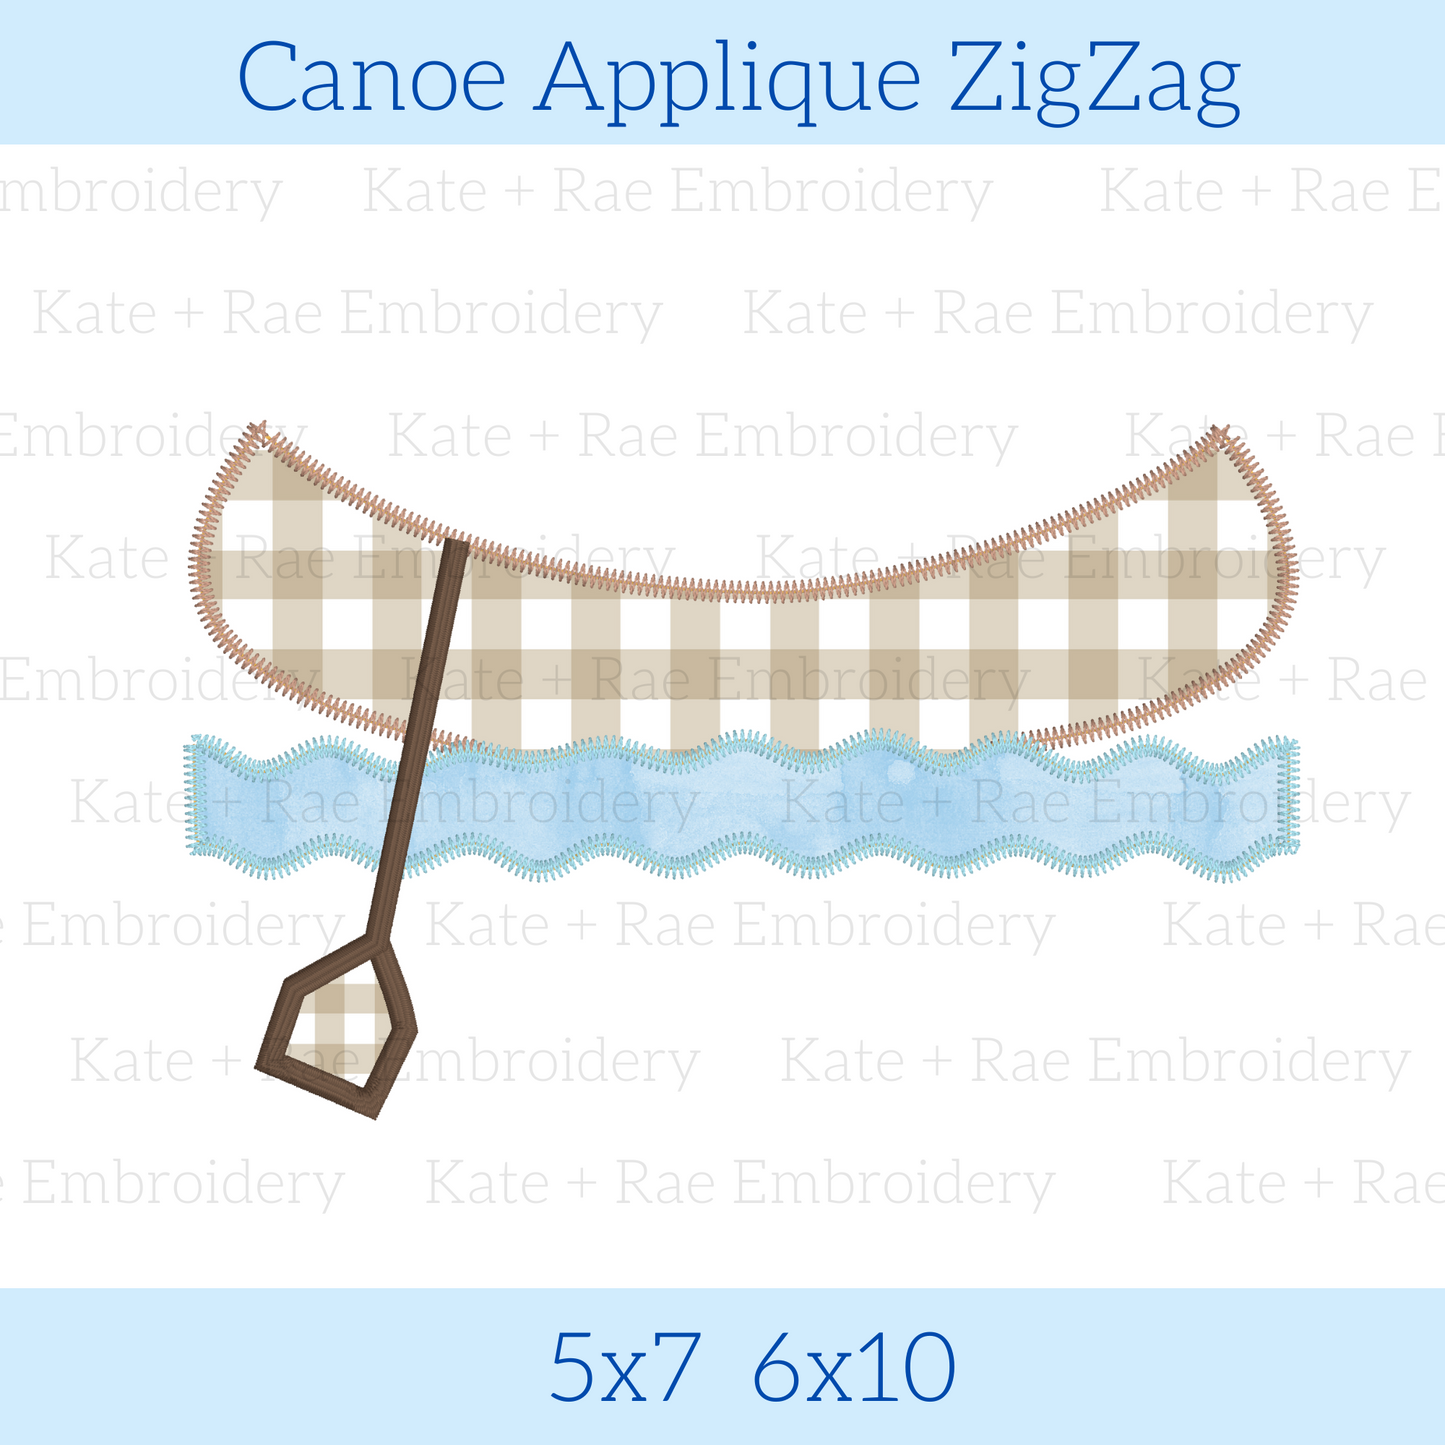 Canoe Applique Zigzag